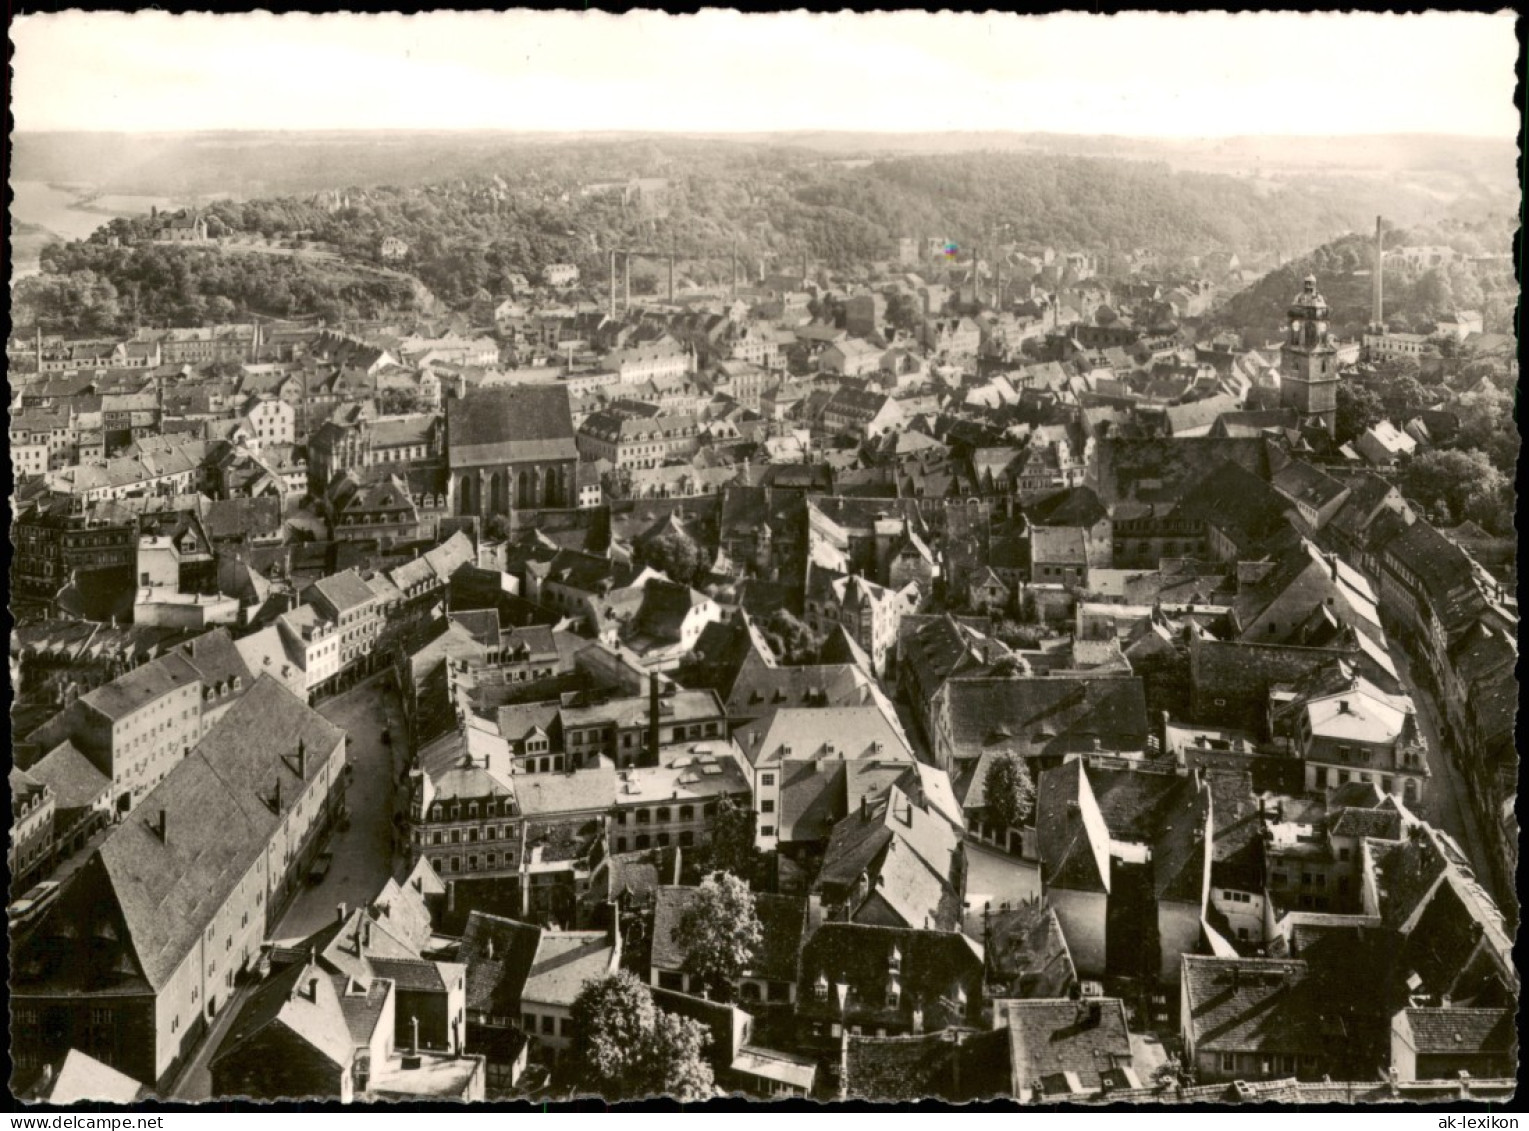 Meißen Blick Vom Burgberg über Die Stadt Nach Dem Plössen 1962 - Meissen